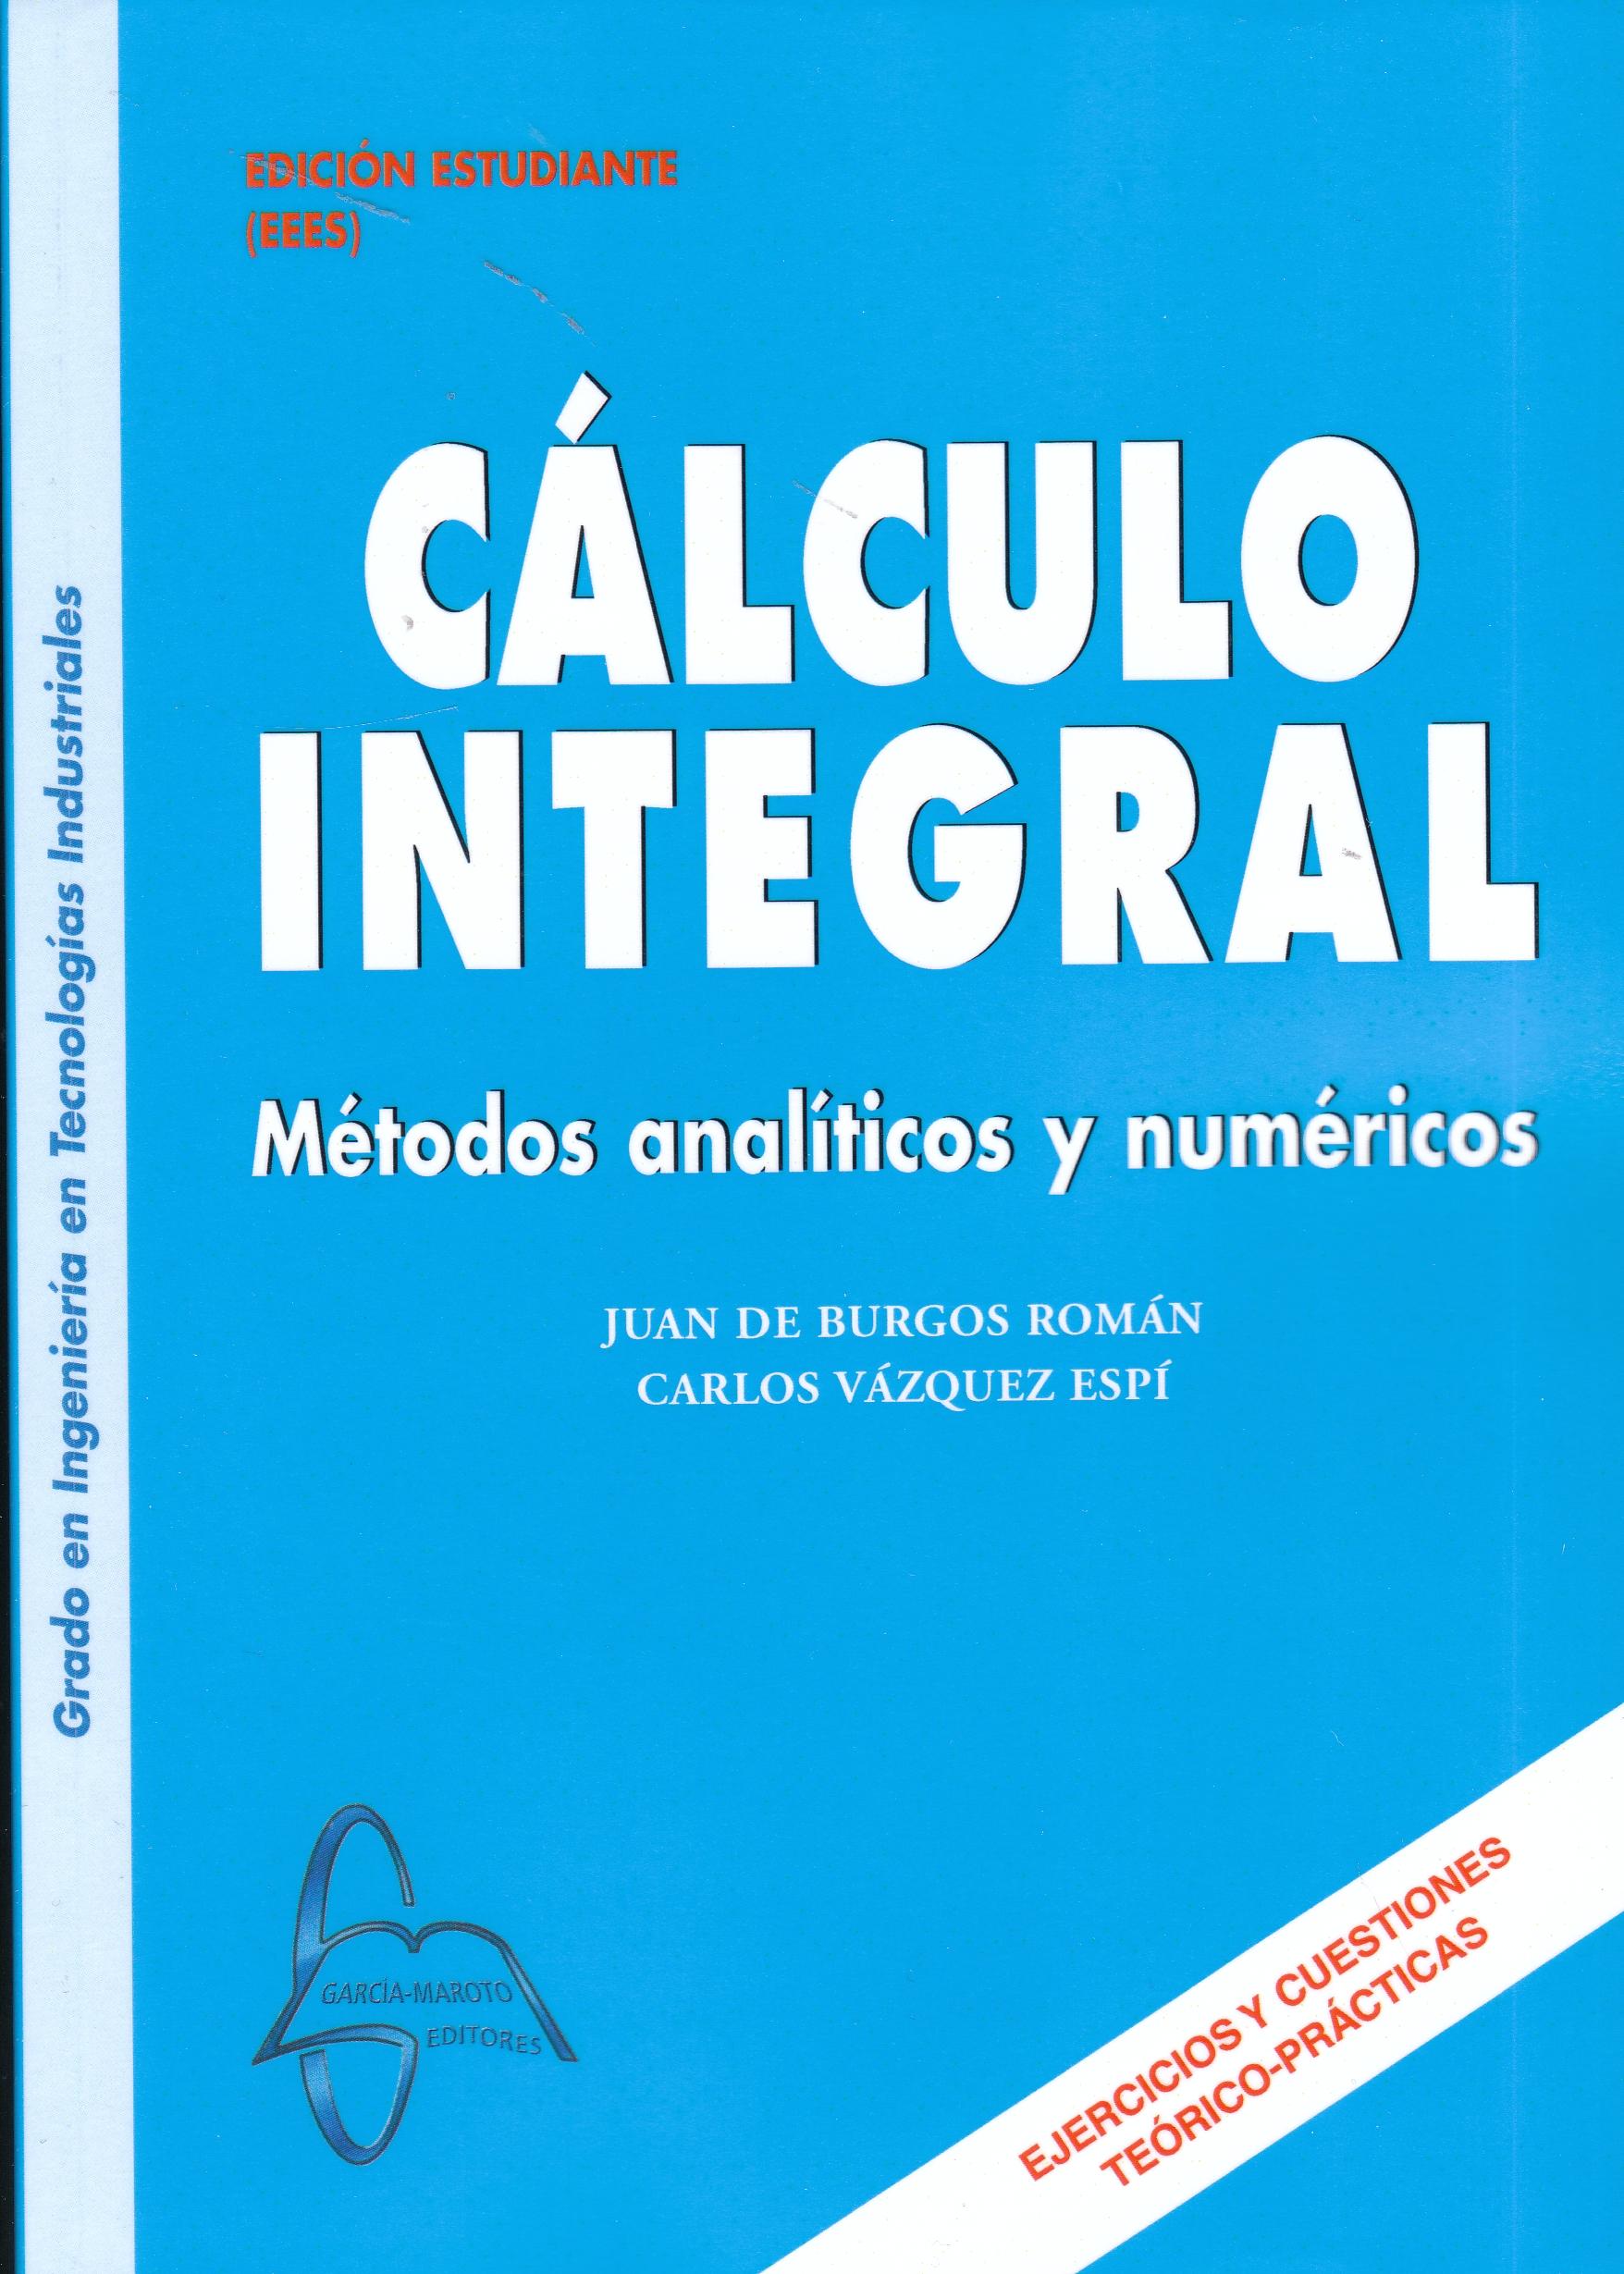 Cálculo integral "Métodos analíticos y numéricos"